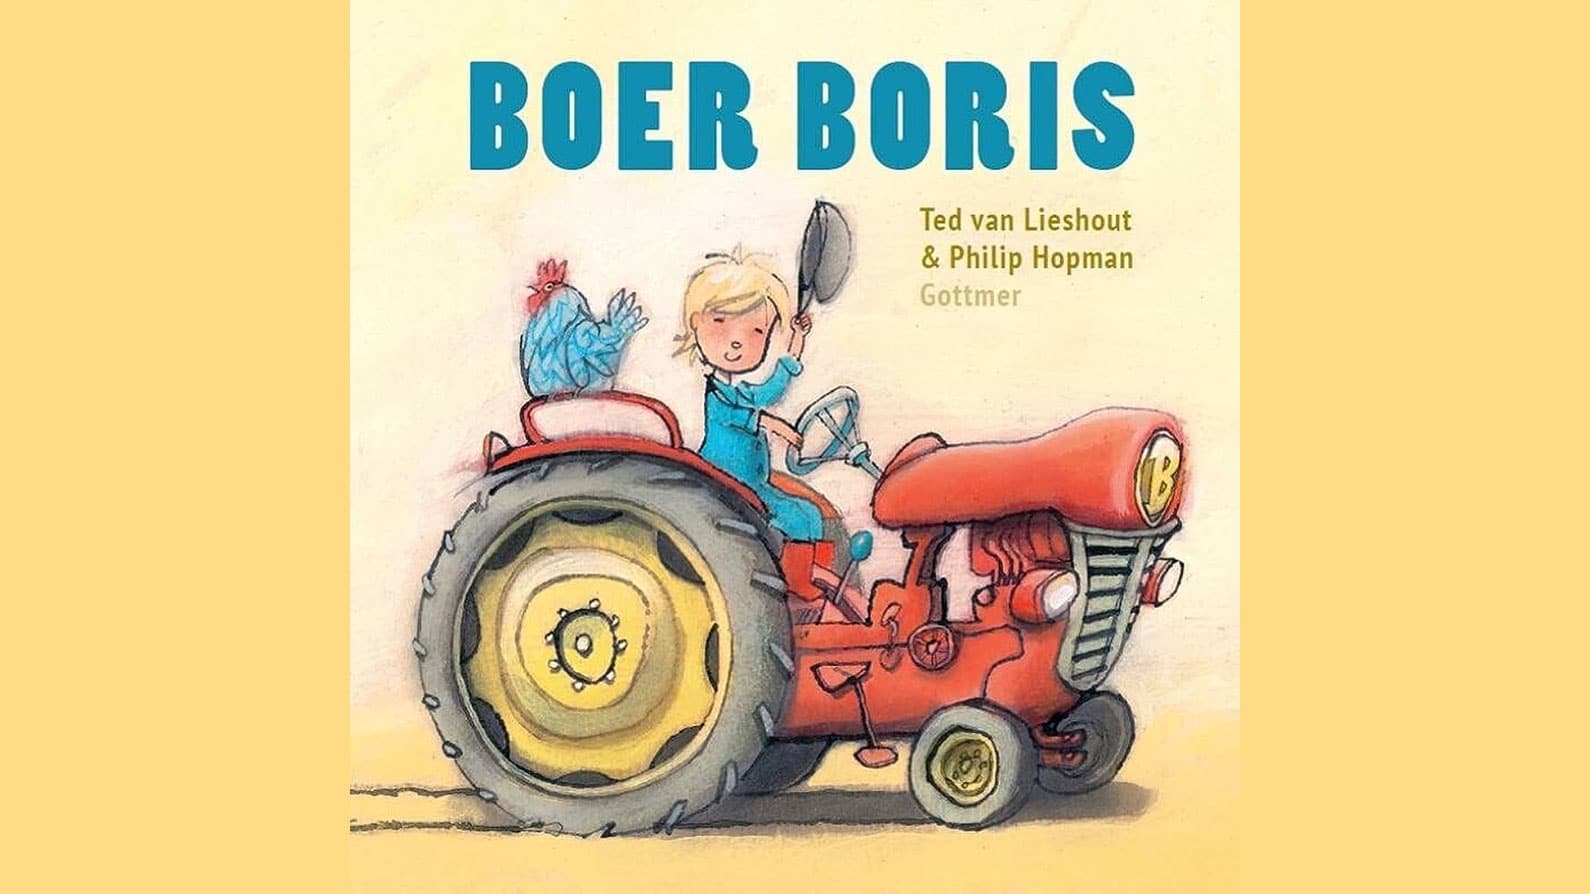 Boer Boris van Ted van Lieshout kinderboek kaft tractor